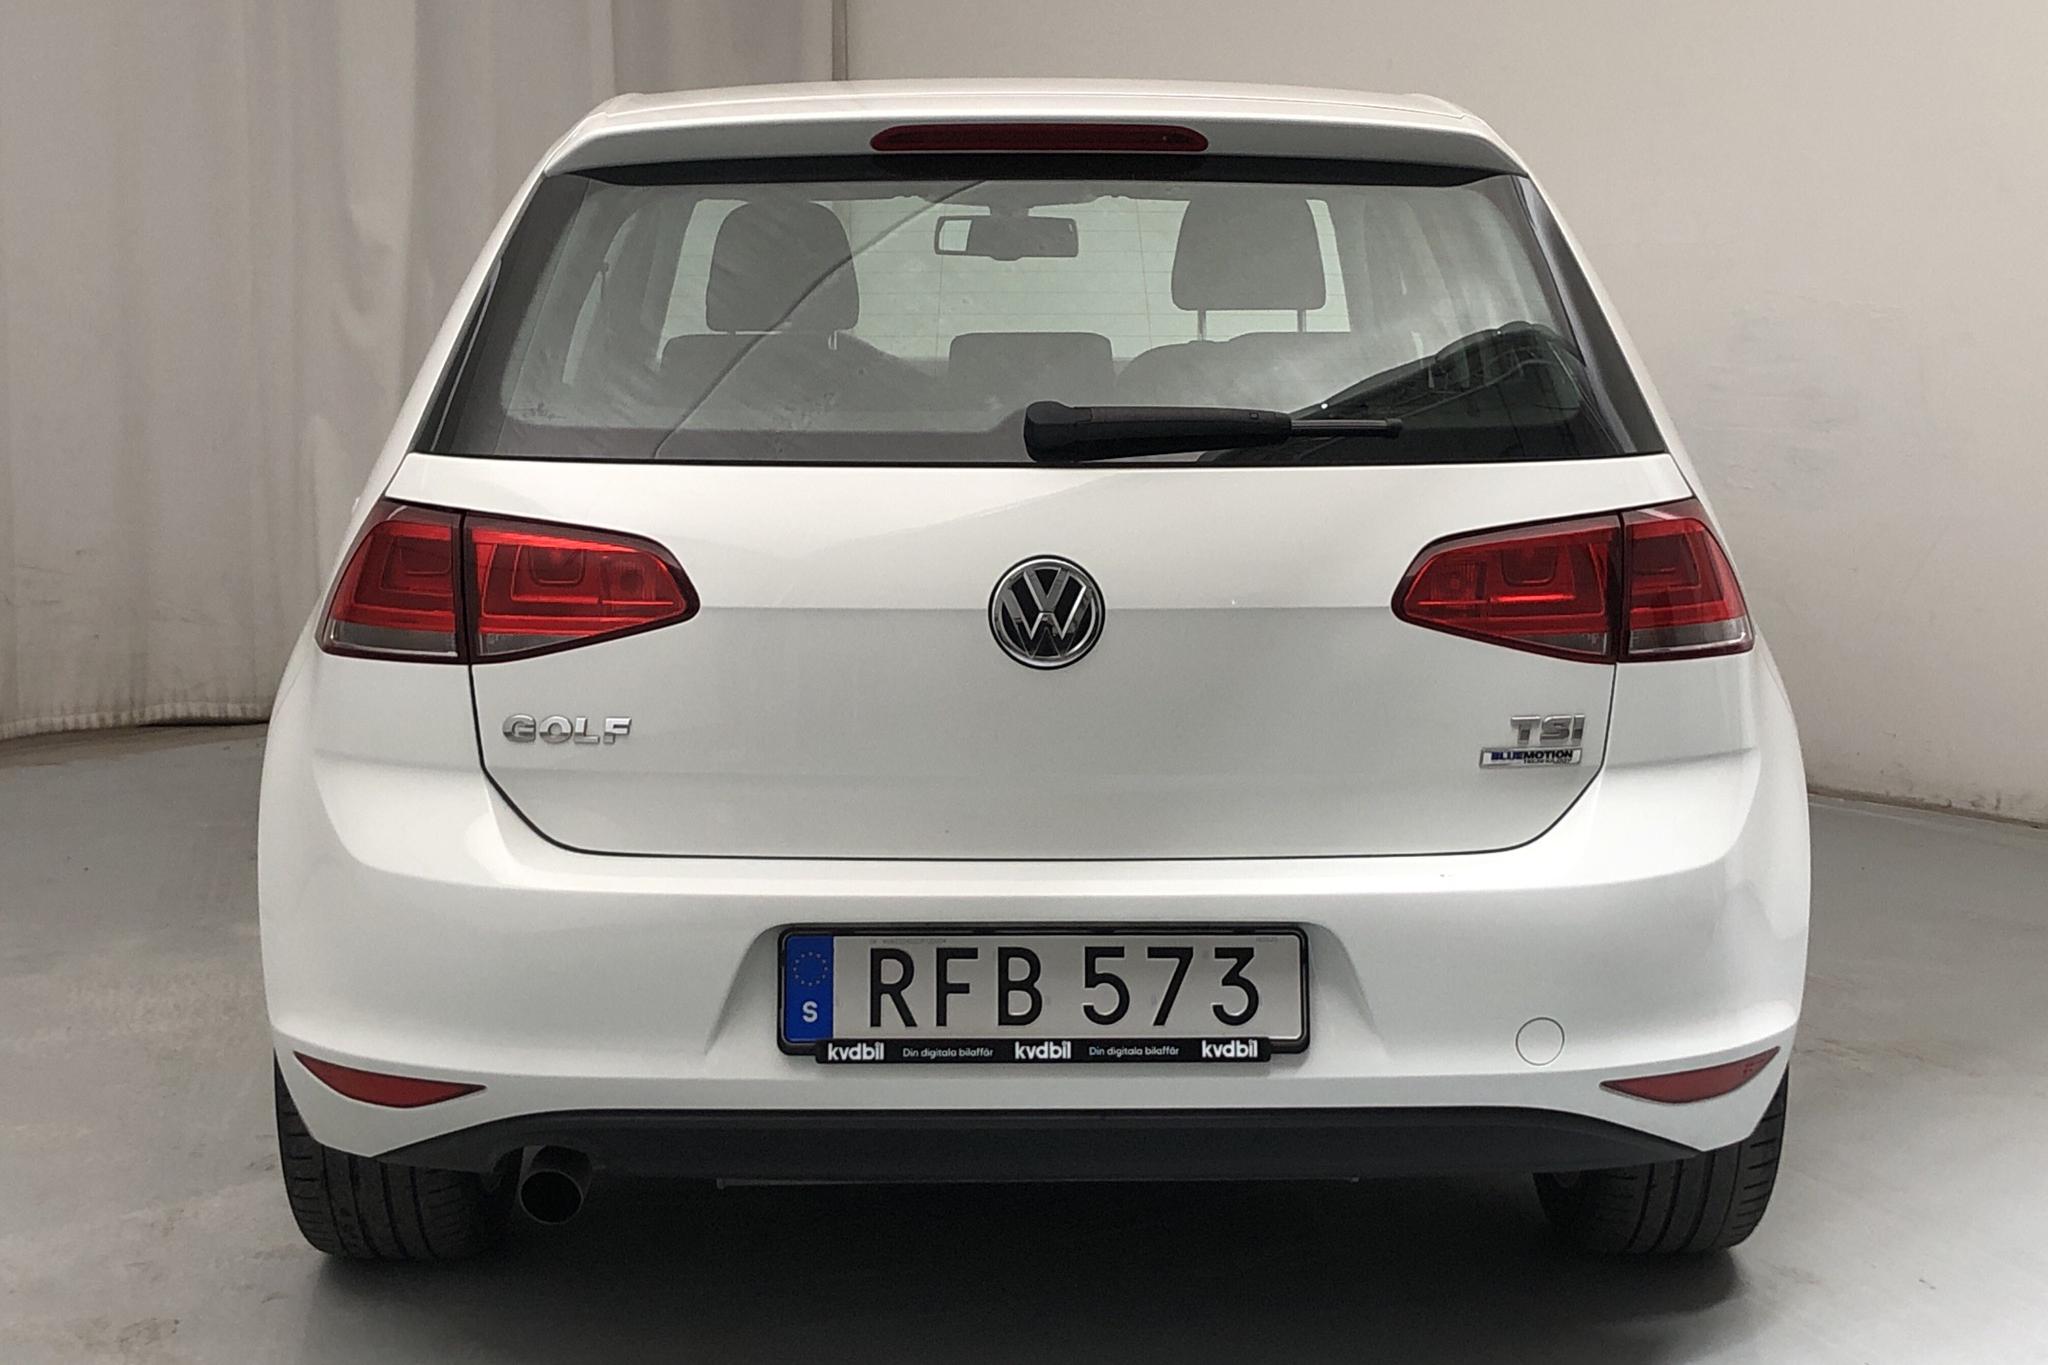 VW Golf VII 1.2 TSI 5dr (110hk) - 51 260 km - Manual - white - 2016